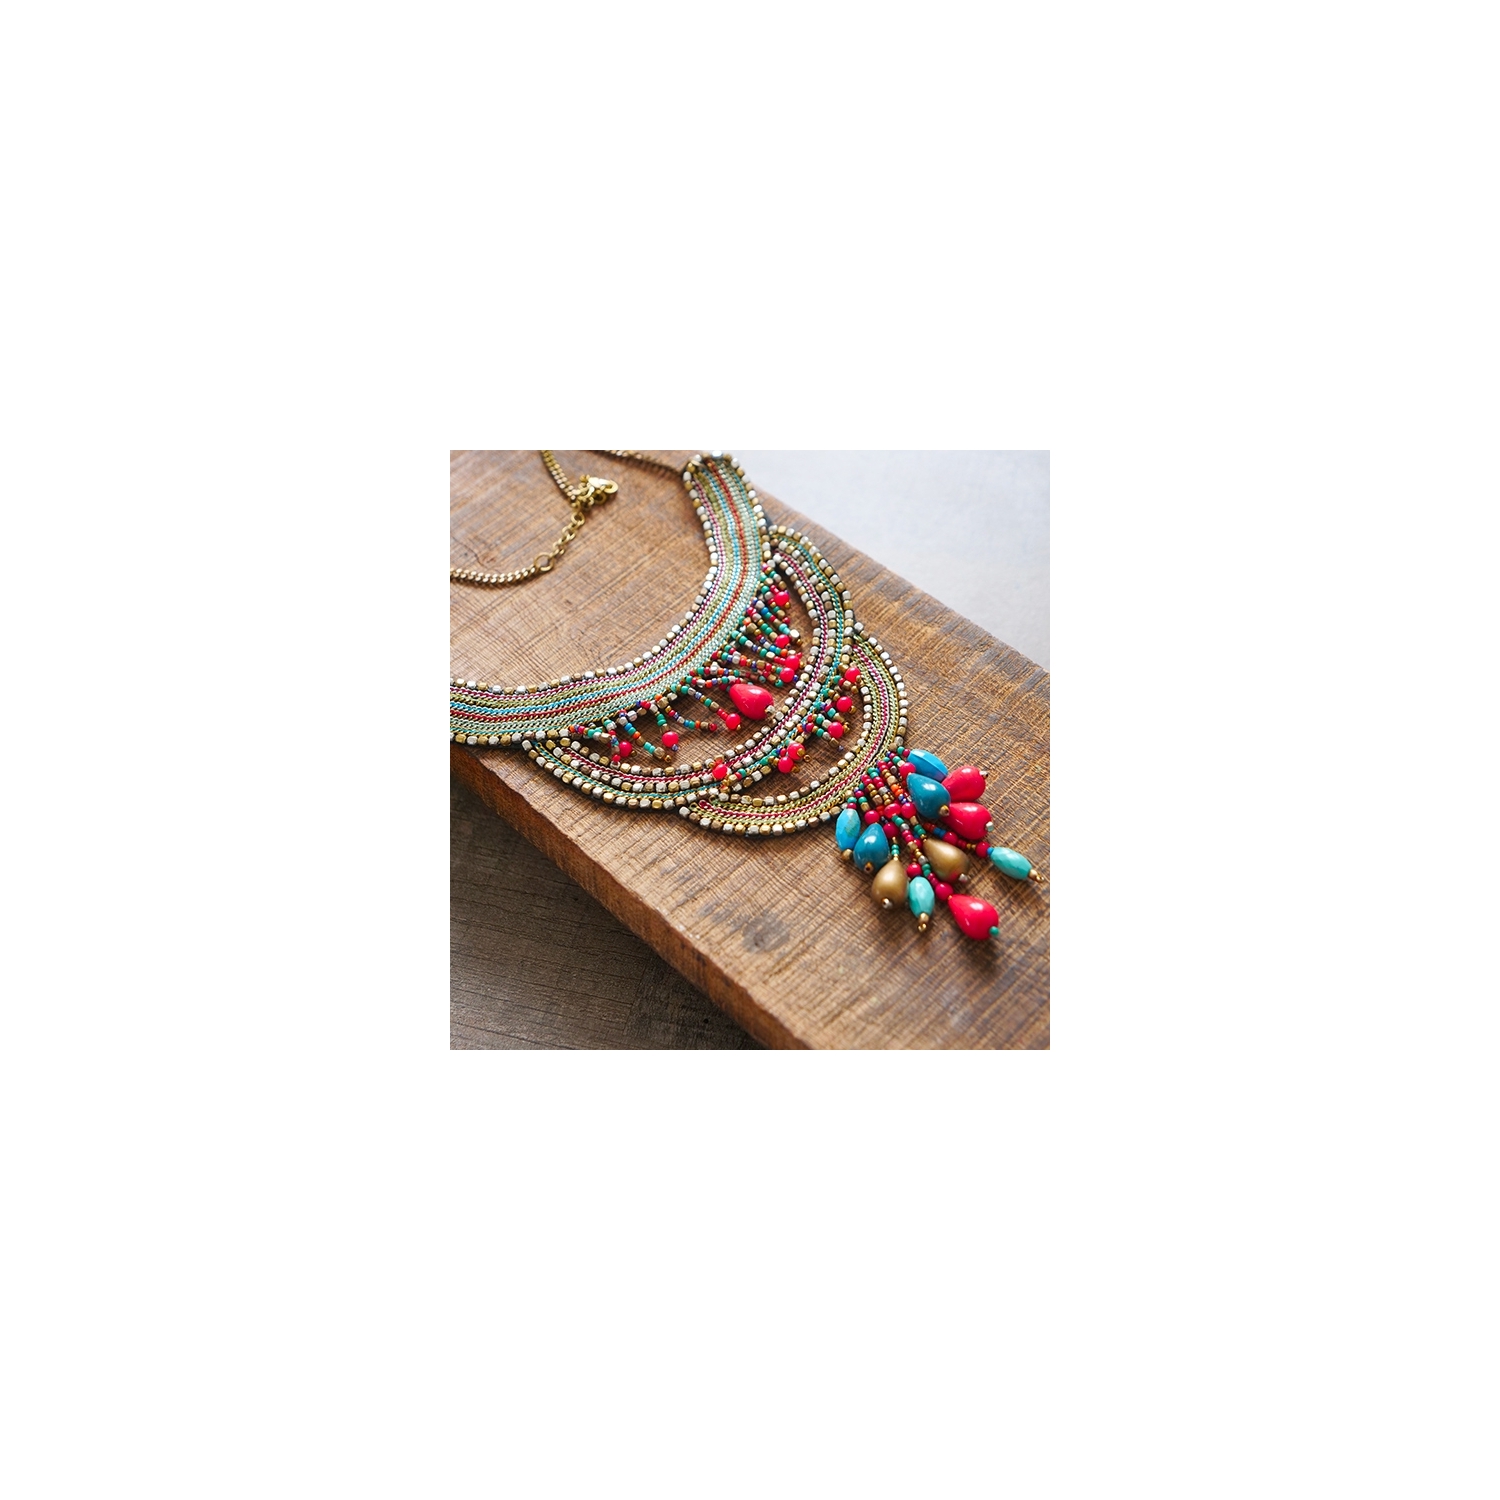 Collier indien ethnique traditionnel coloré